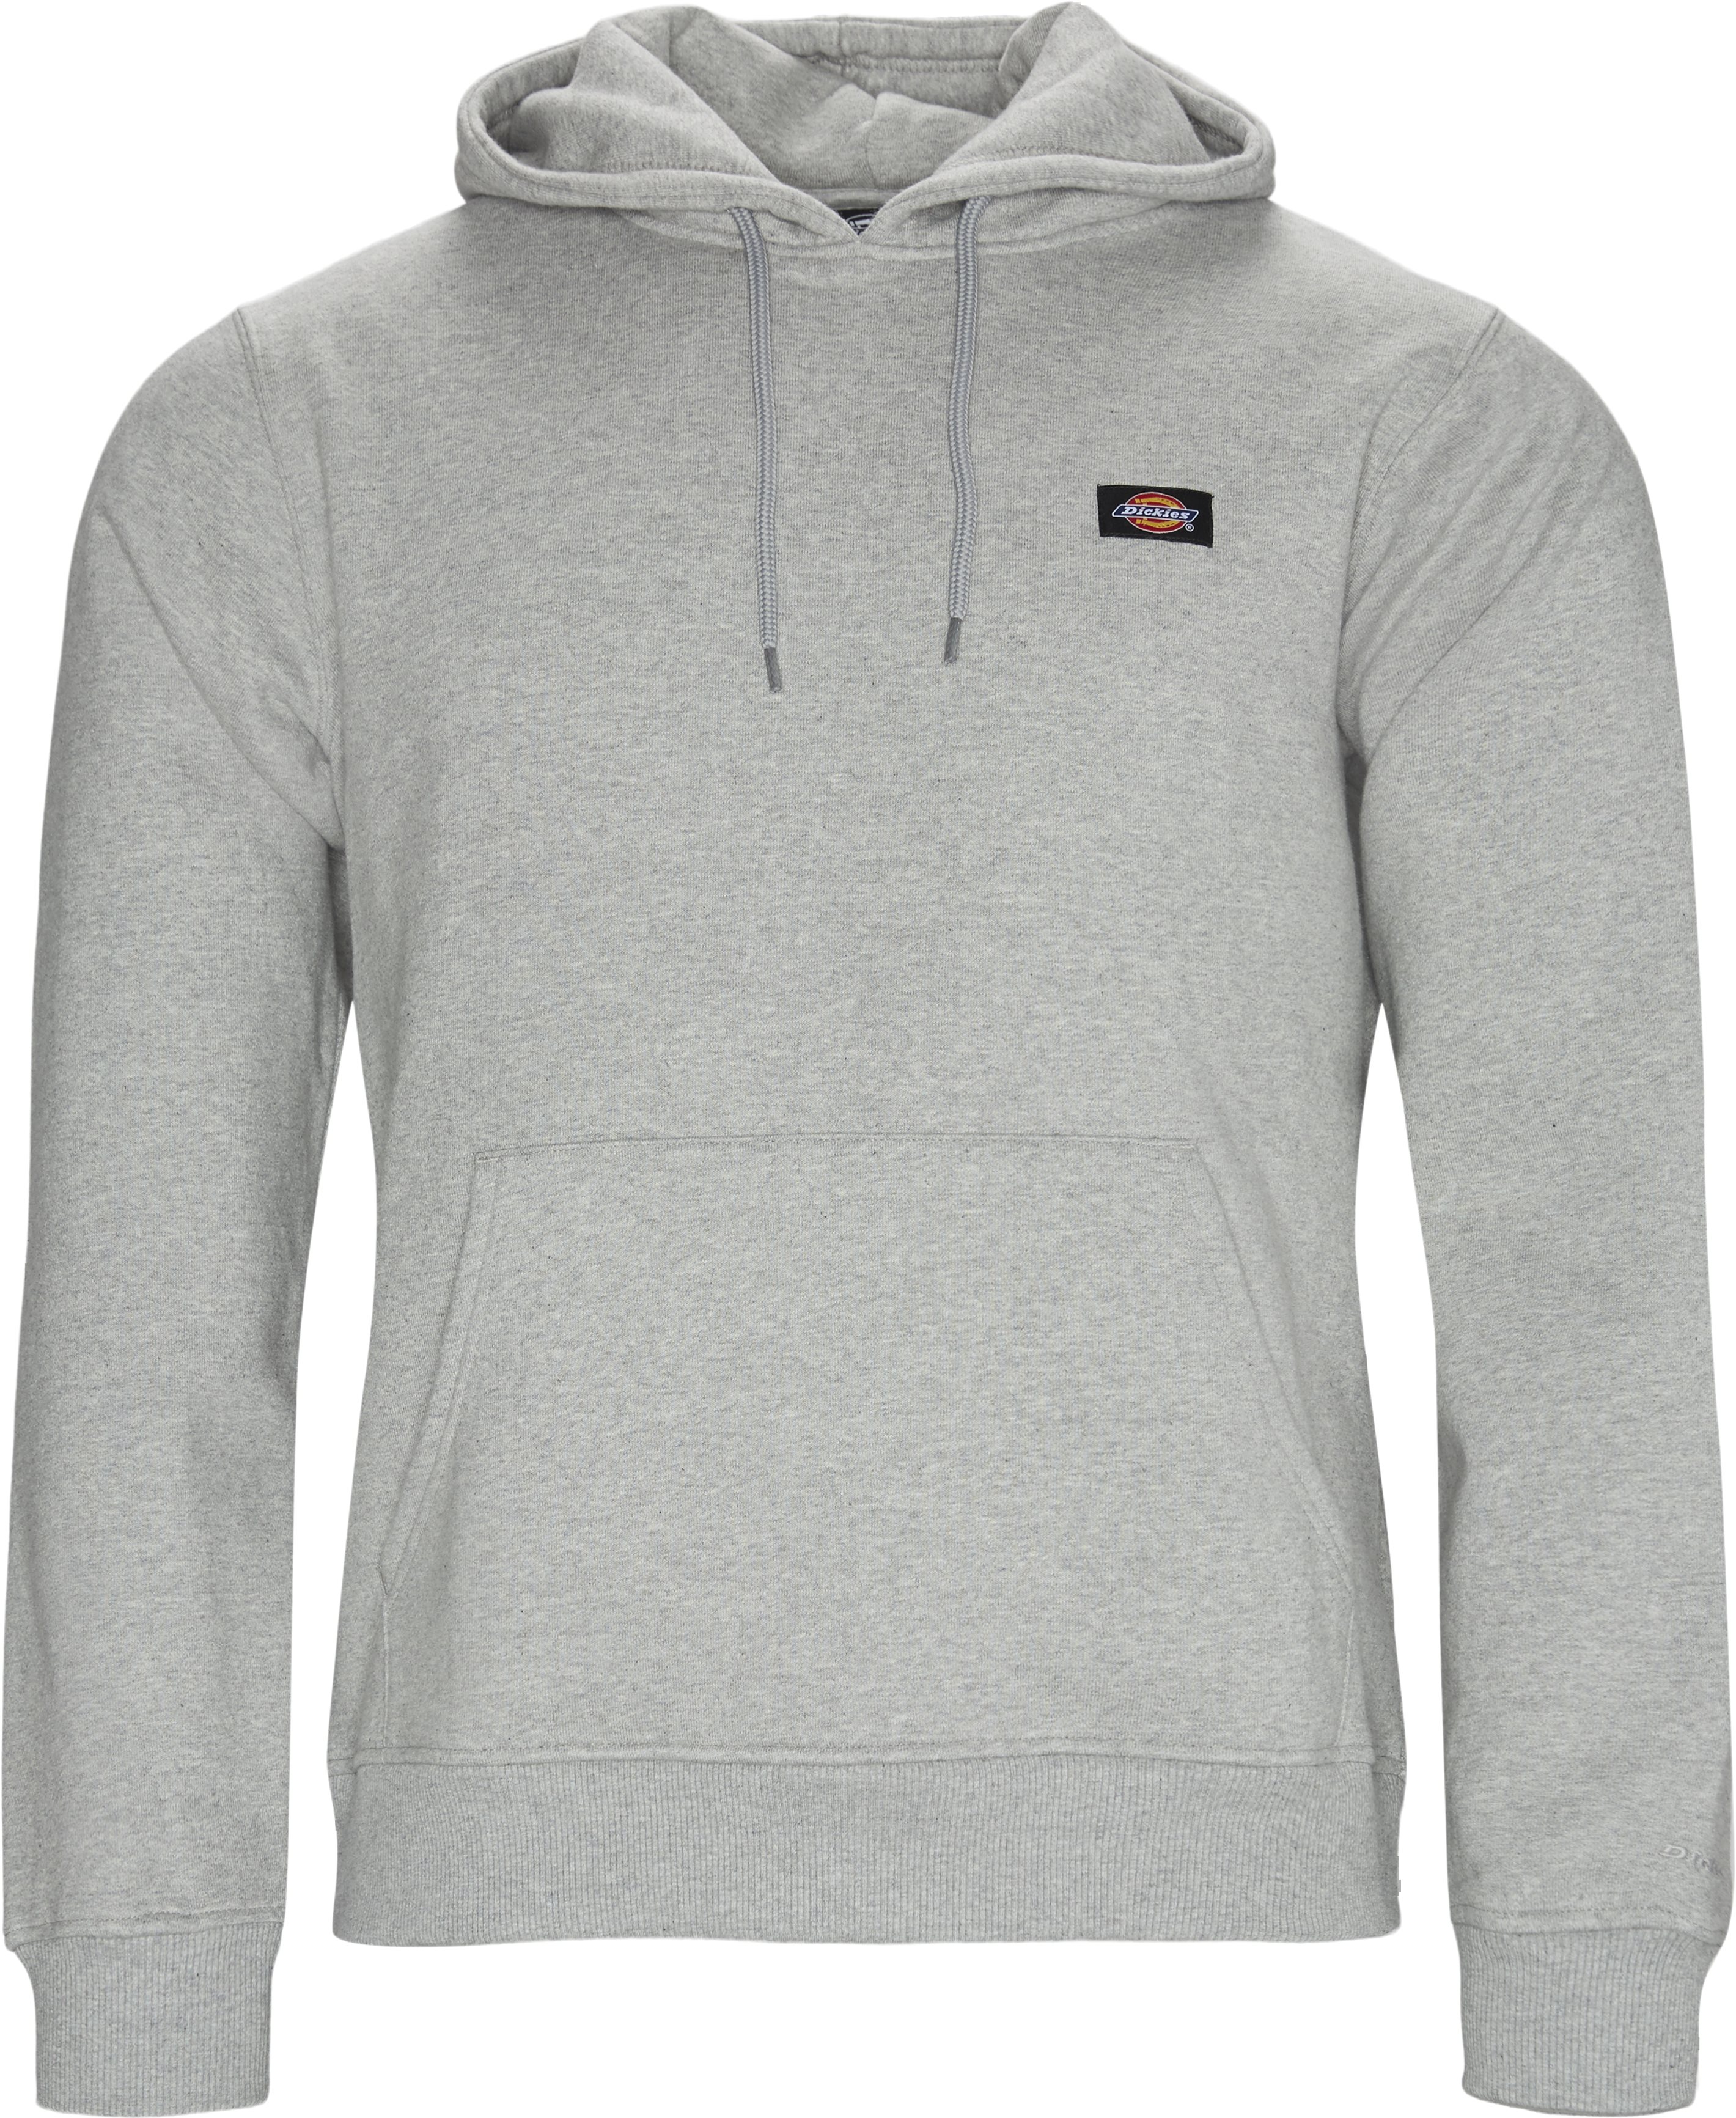 Sweatshirts - Grey